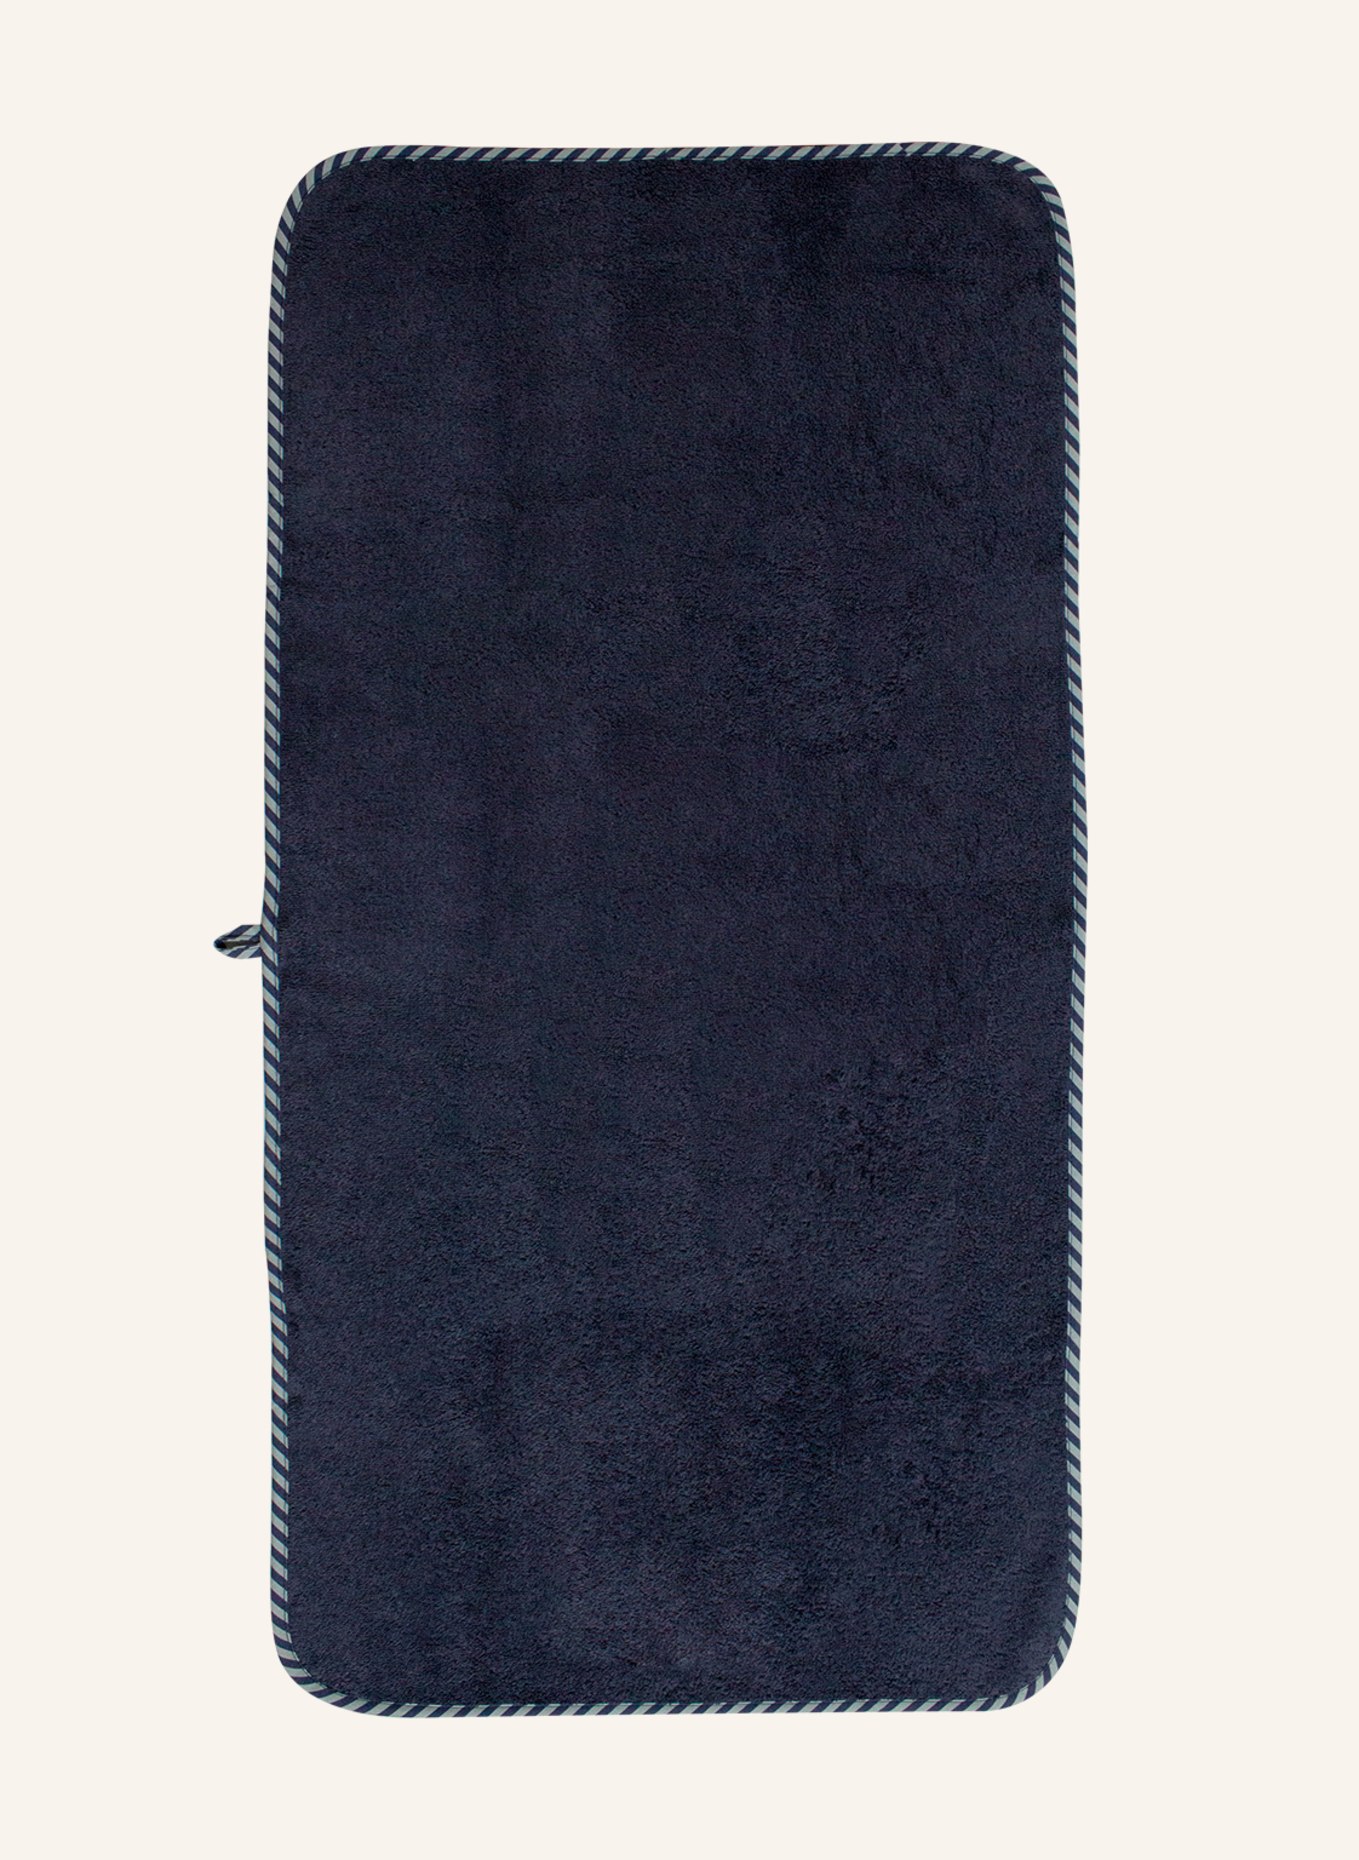 KATHA Covers Handtuch RAKETE, Farbe: BLAU (Bild 2)